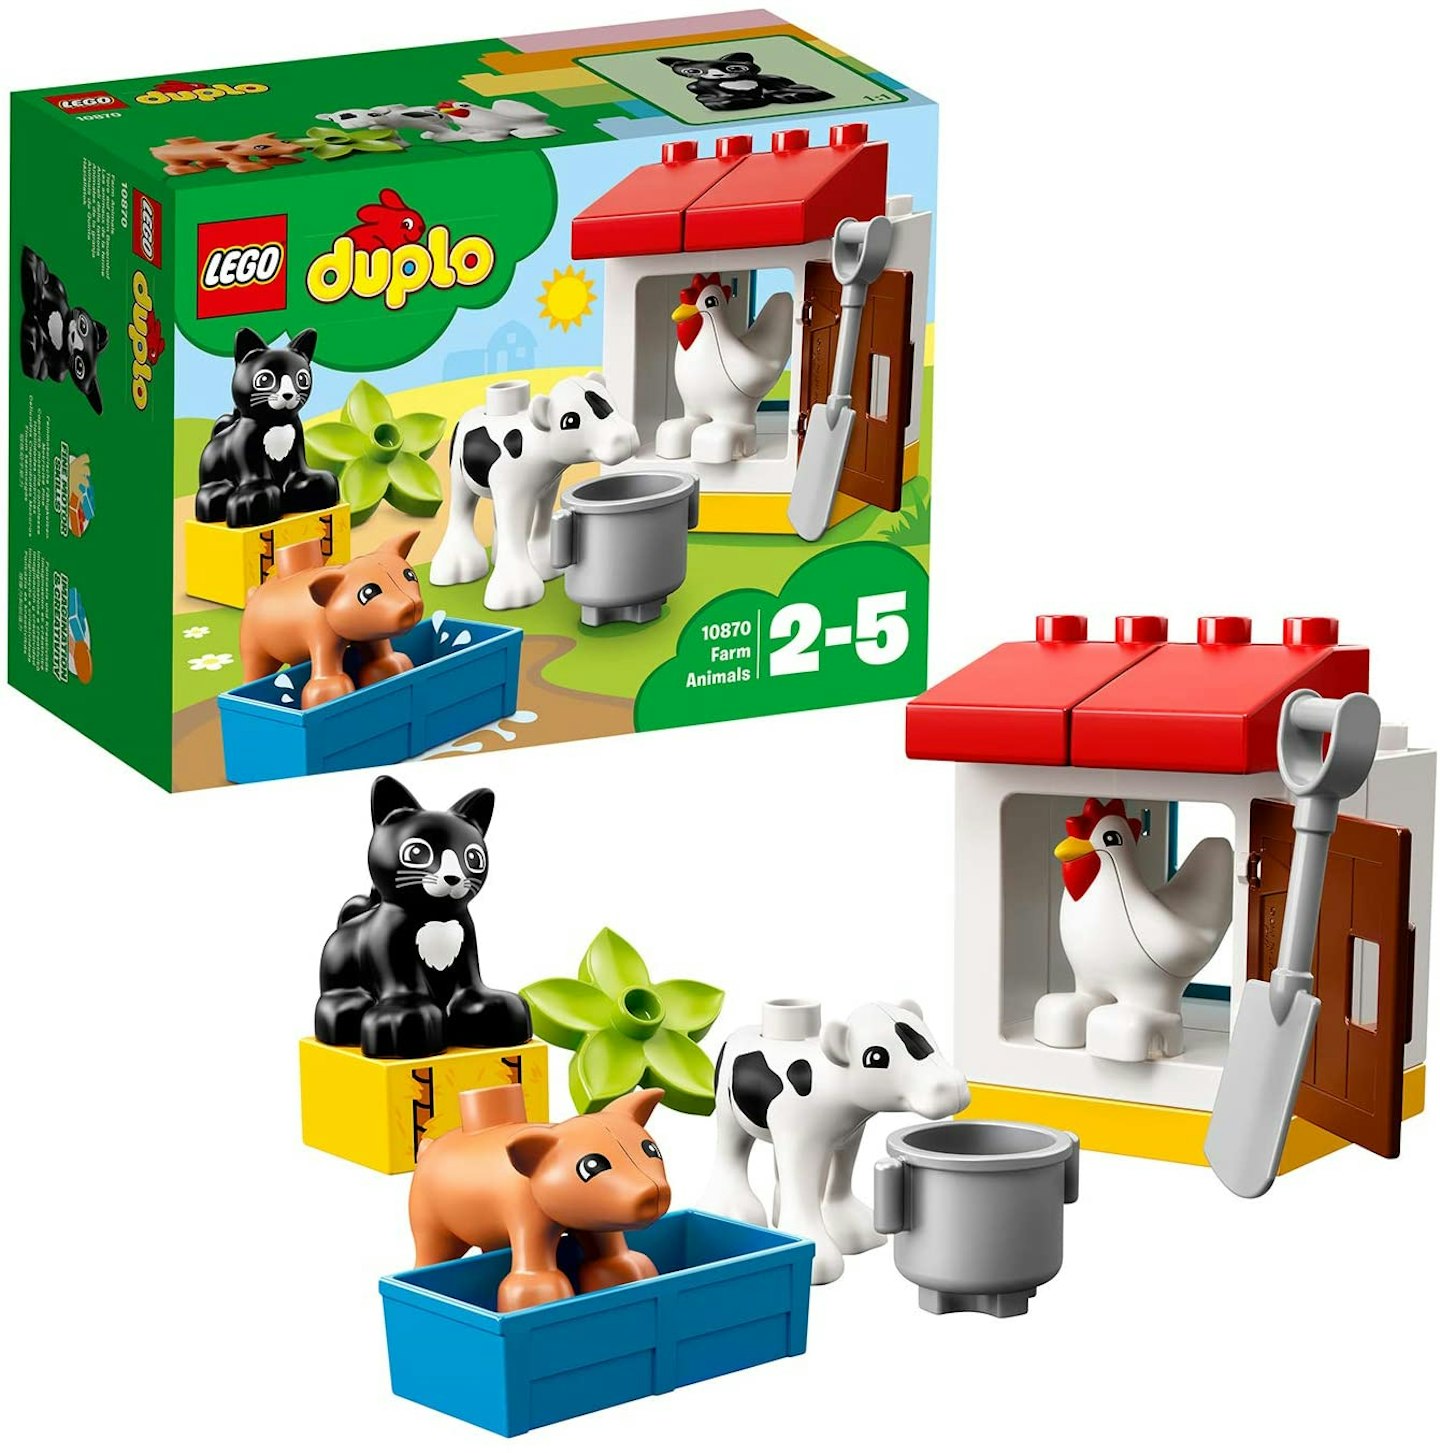 LEGO 10870 DUPLO Town Farm Animals 